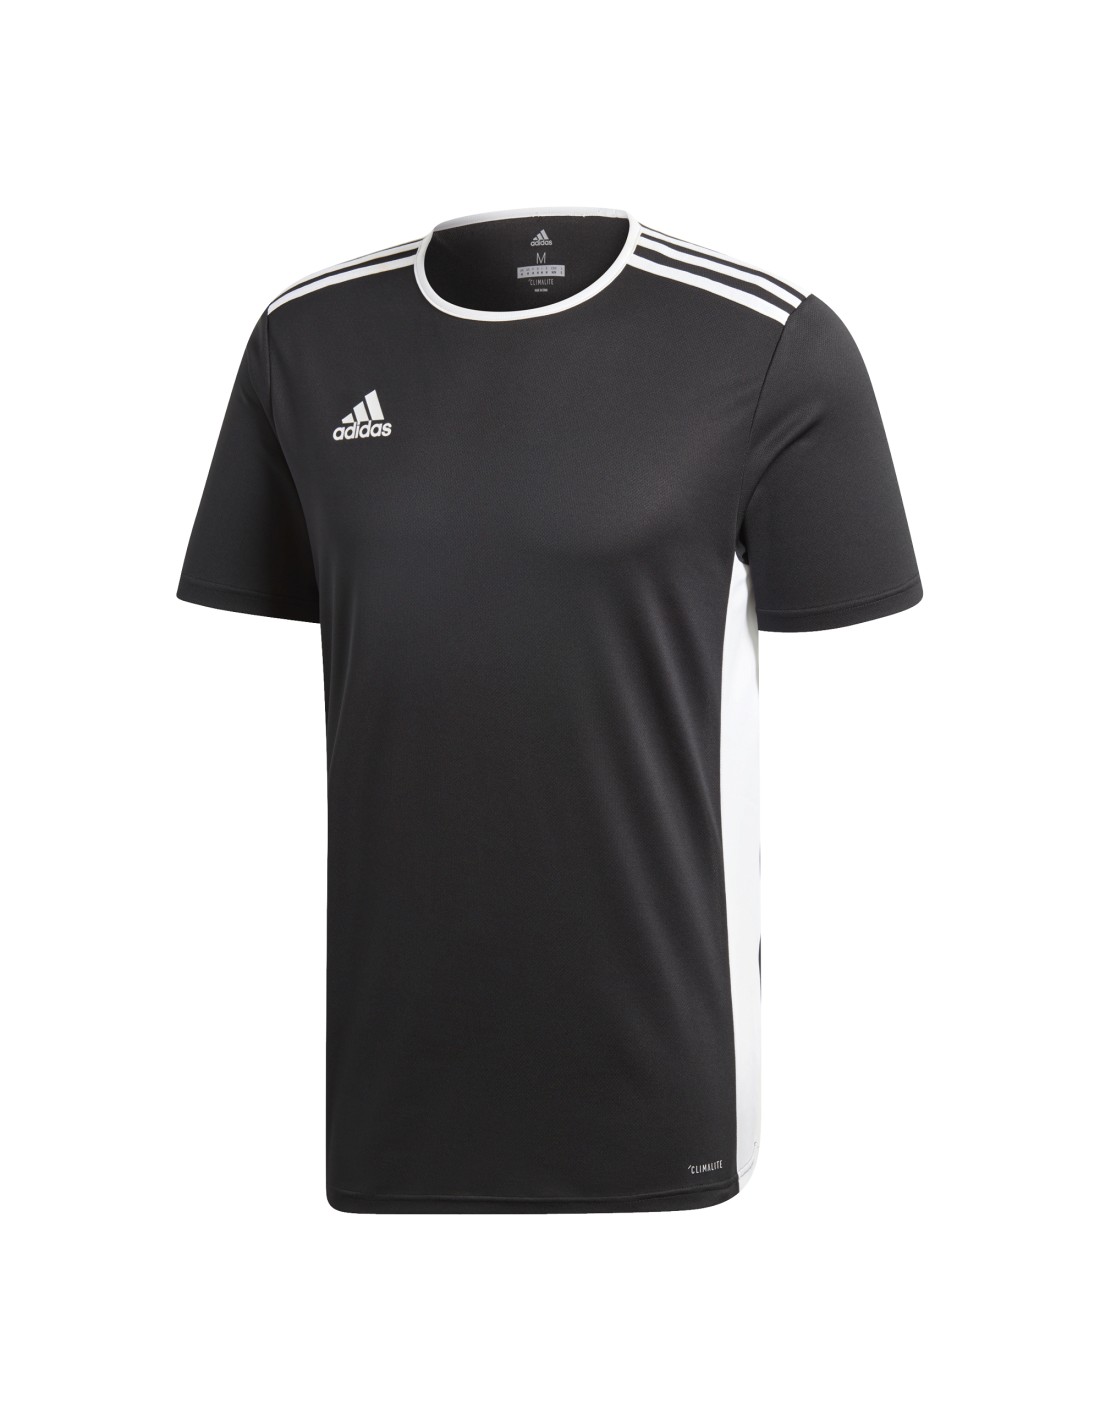 https://deportesasturias.com/14003-thickbox_default/entrada-18-jsy-camiseta-adidas-tecnica-hombre.jpg